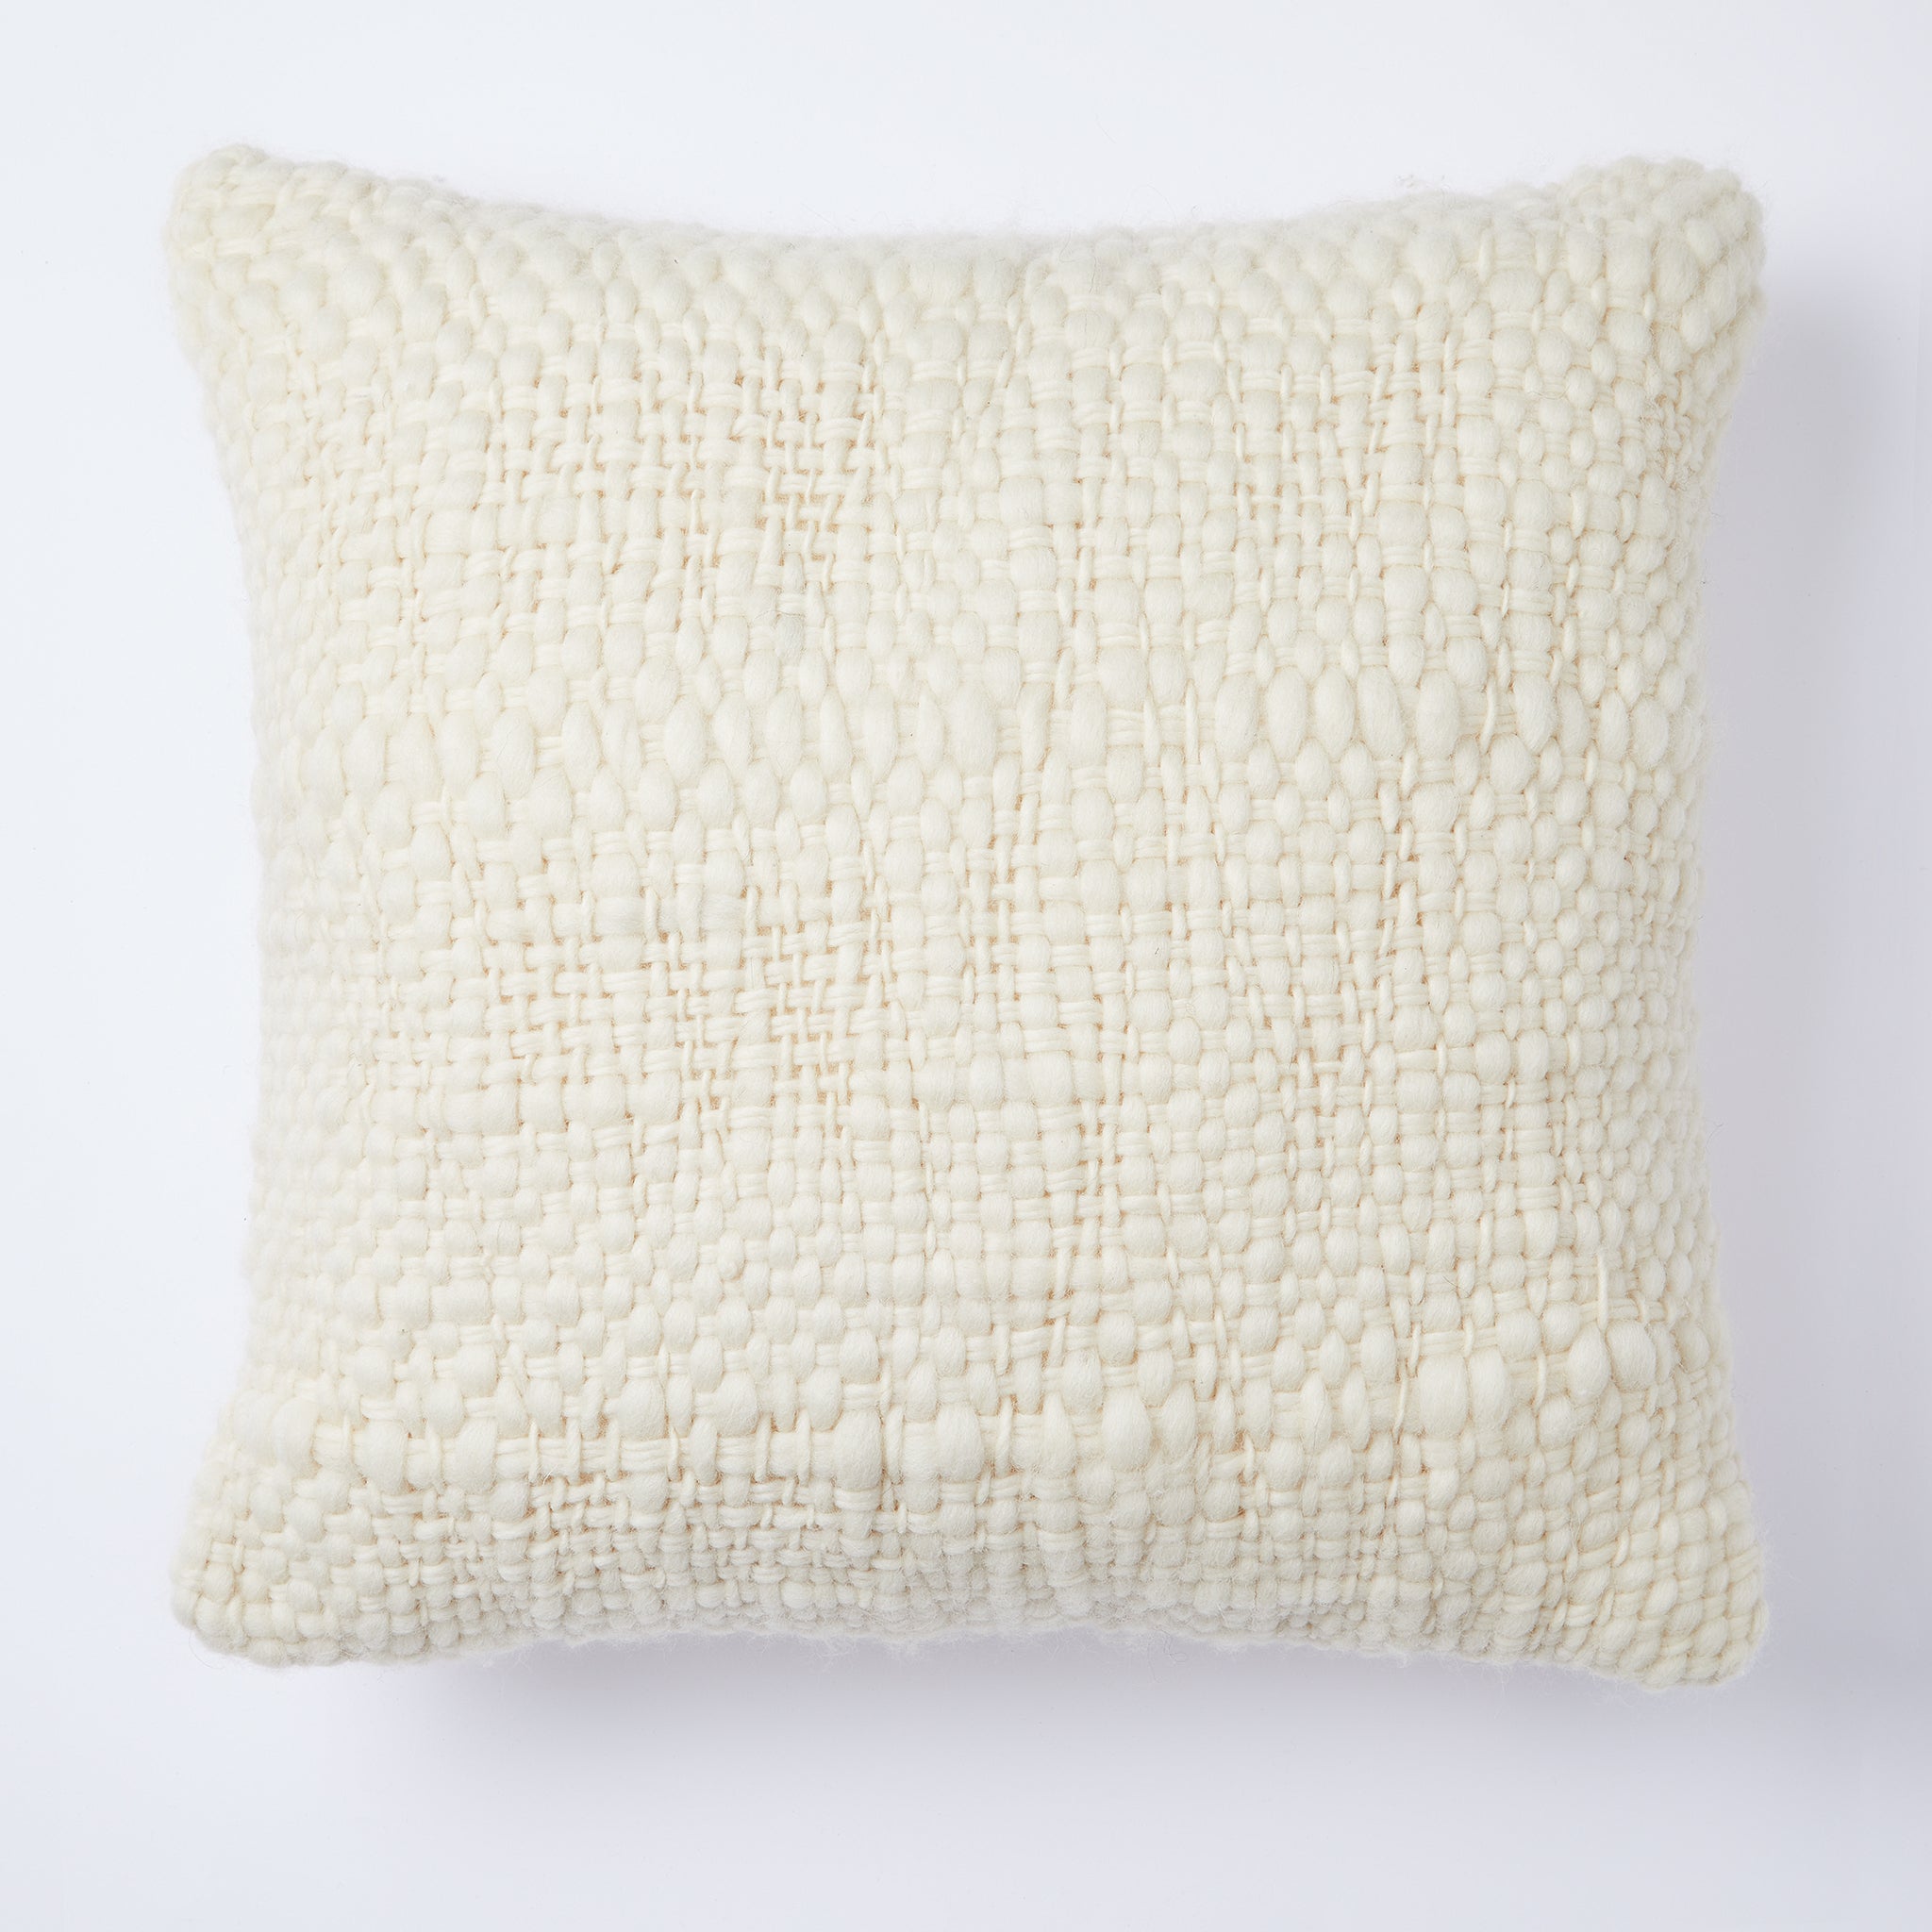 Hand-woven cushion "Sueno", 50x50cm, natural